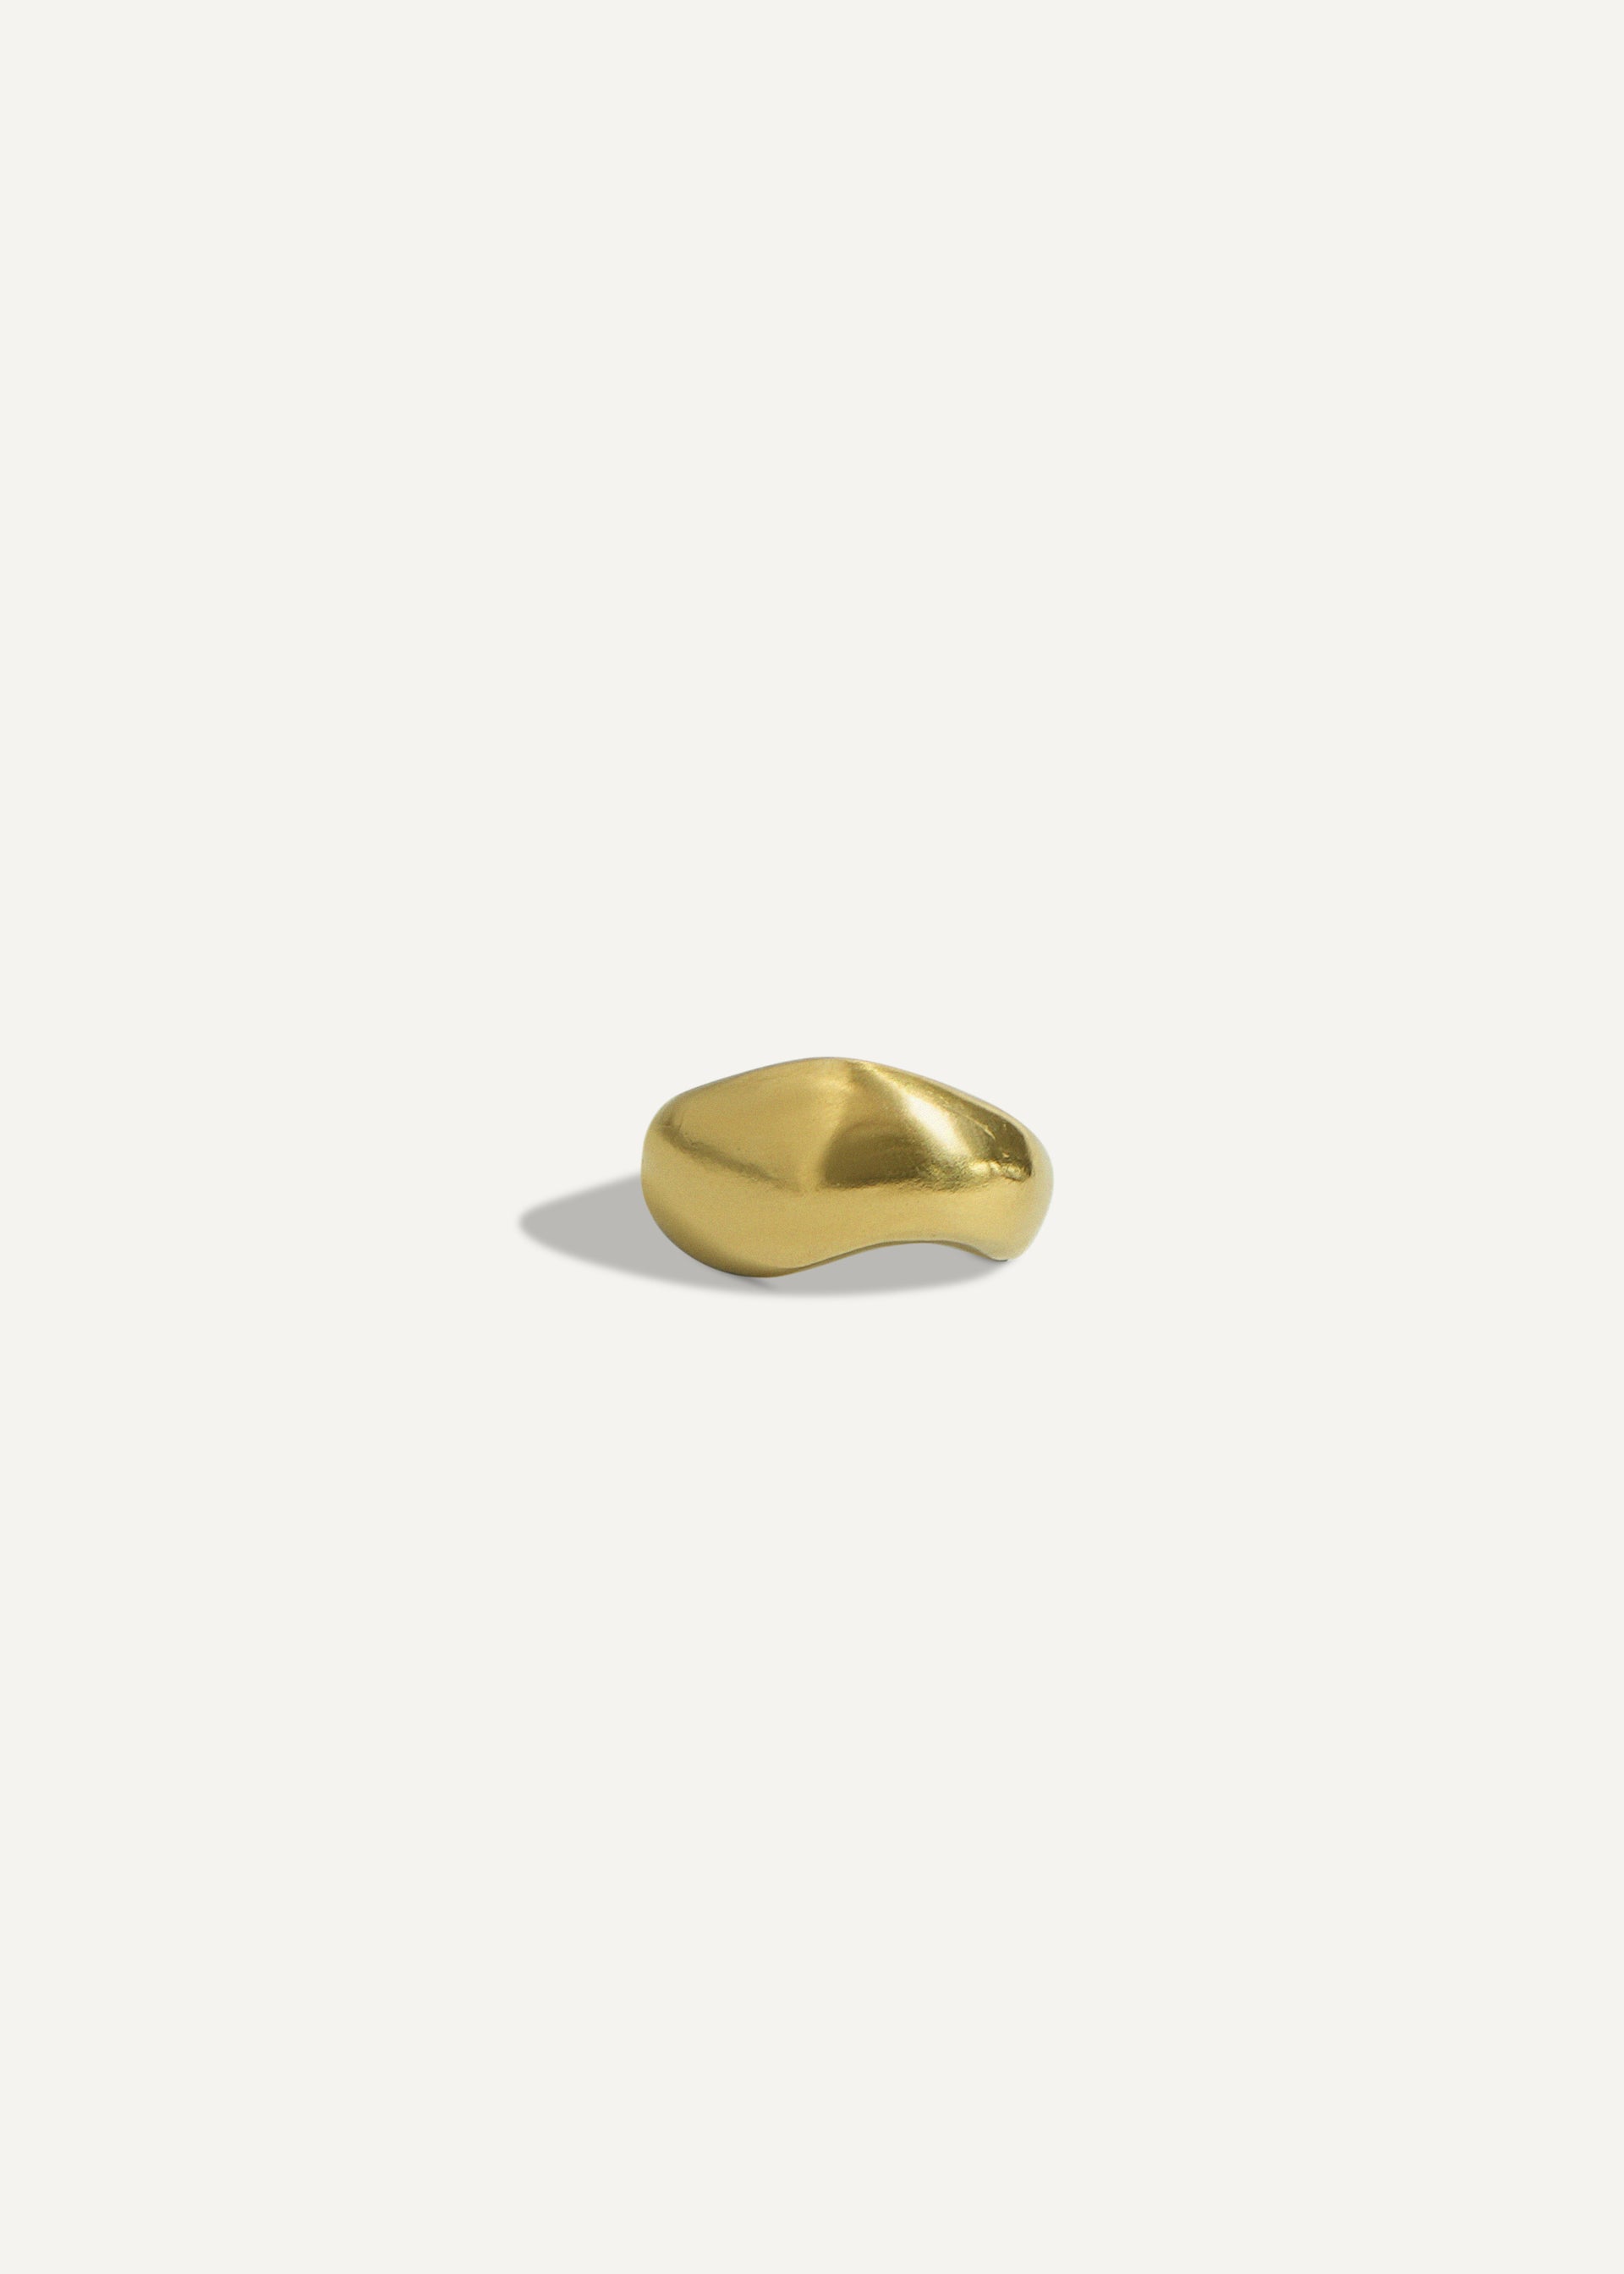 Cigfa Ring in Gold